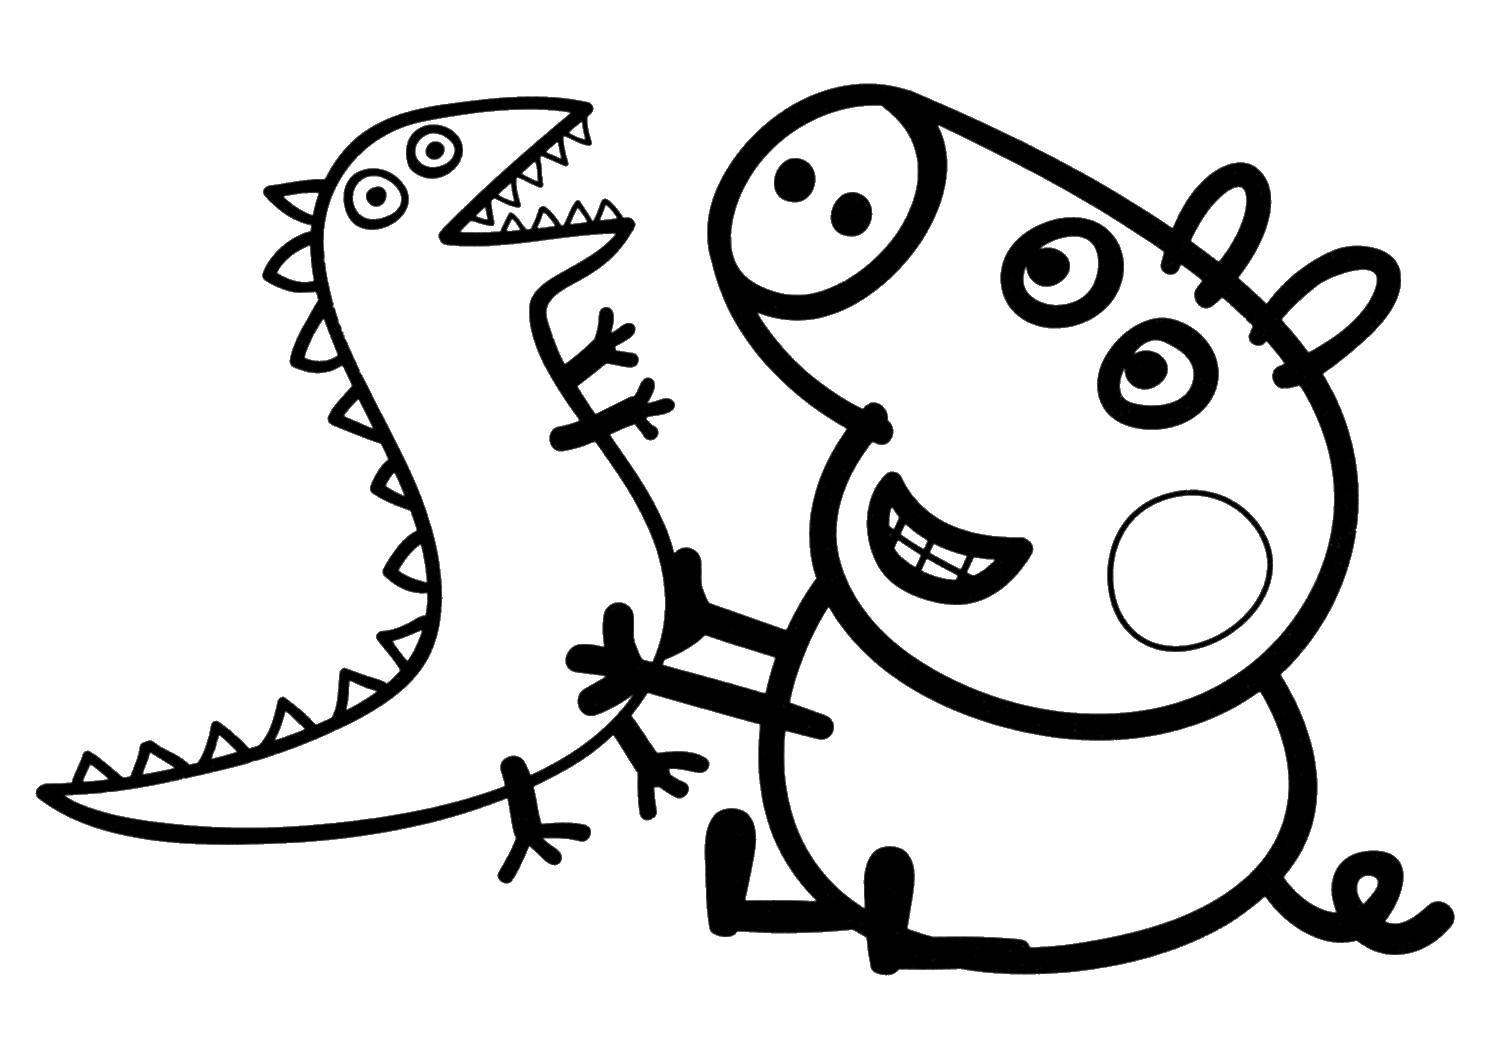 Познавательные и забавные раскраски для детей про свинку Пеппу  Джош с динозавриком